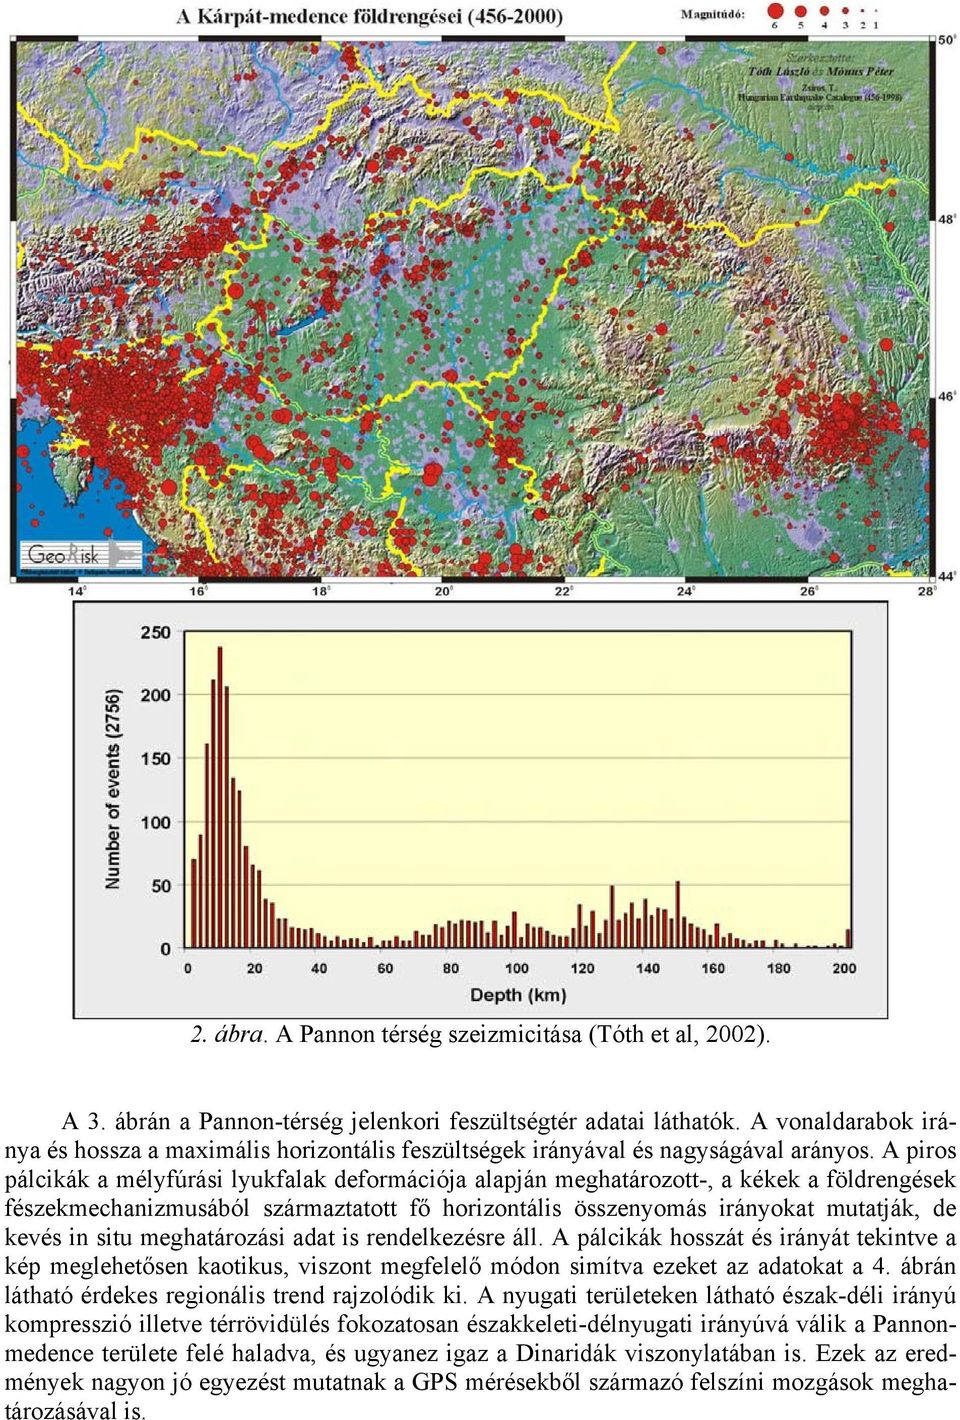 A piros pálcikák a mélyfúrási lyukfalak deformációja alapján meghatározott-, a kékek a földrengések fészekmechanizmusából származtatott fő horizontális összenyomás irányokat mutatják, de kevés in